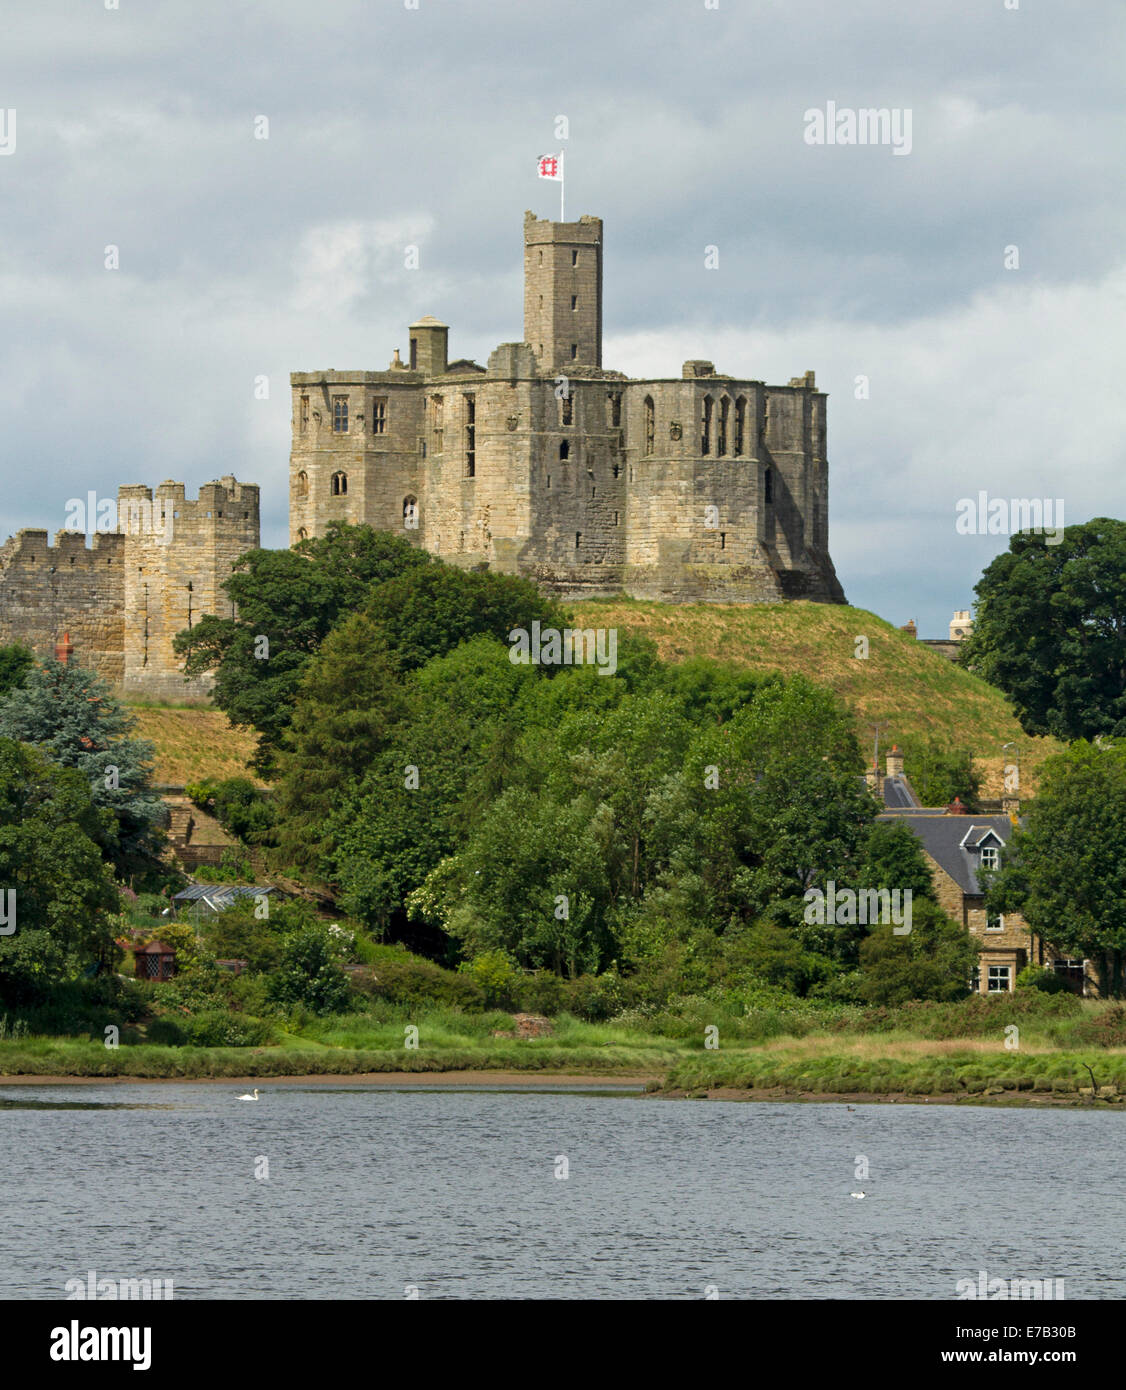 Storica del XII secolo il castello di Warkworth situato sulla collina che si affaccia sul fiume Coquet in Northumberland, Inghilterra Foto Stock